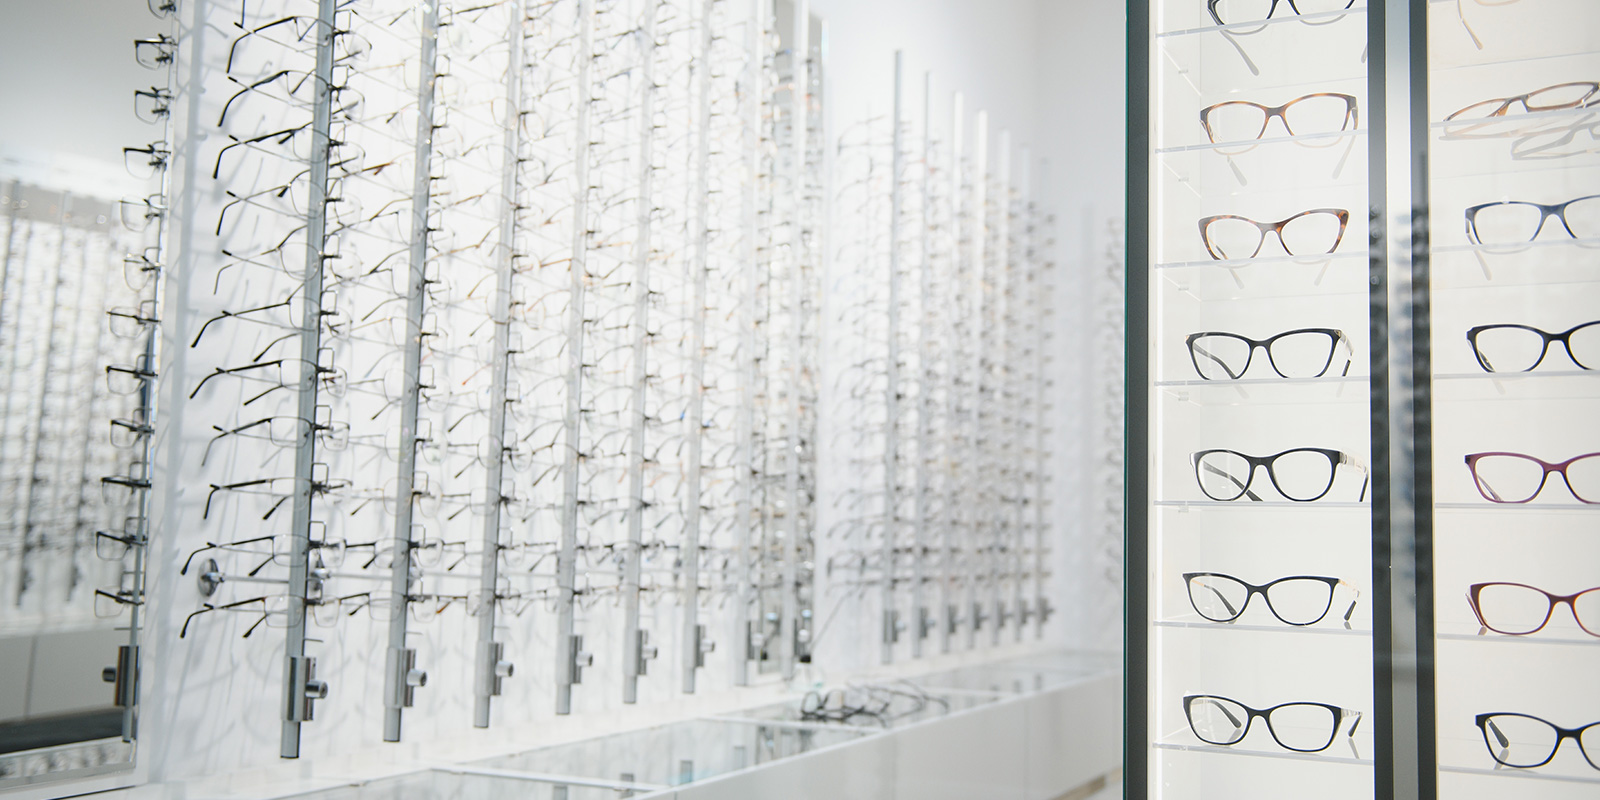 Gözlük Alırken Nelere Dikat Etmeliyiz || Anatolia Ventures Optik | Erkek Gözlüğü Üretim, Kadın Gözlüğü Üretim, Çocuk Gözlüğü Üretim, Kolej Gözlüğü Üretim, Okuma Gözlüğü Üretim, Unisex Gözlüğü Üretim, Güneş Gözlüğü Üretim , Köprül Gözlüğü Üretim,  Erkek Gözlüğü, Kadın Gözlüğü, Çocuk Gözlüğü, Kolej Gözlüğü, Okuma Gözlüğü, Unisex Gözlüğü, Güneş Gözlüğü, Frenk Gözlüğü, Frenk Metal Gözlüğü, Frenk Okuma Gözlüğü, Frenk Güneş Gözlüğü, Köprül Gözlüğü 